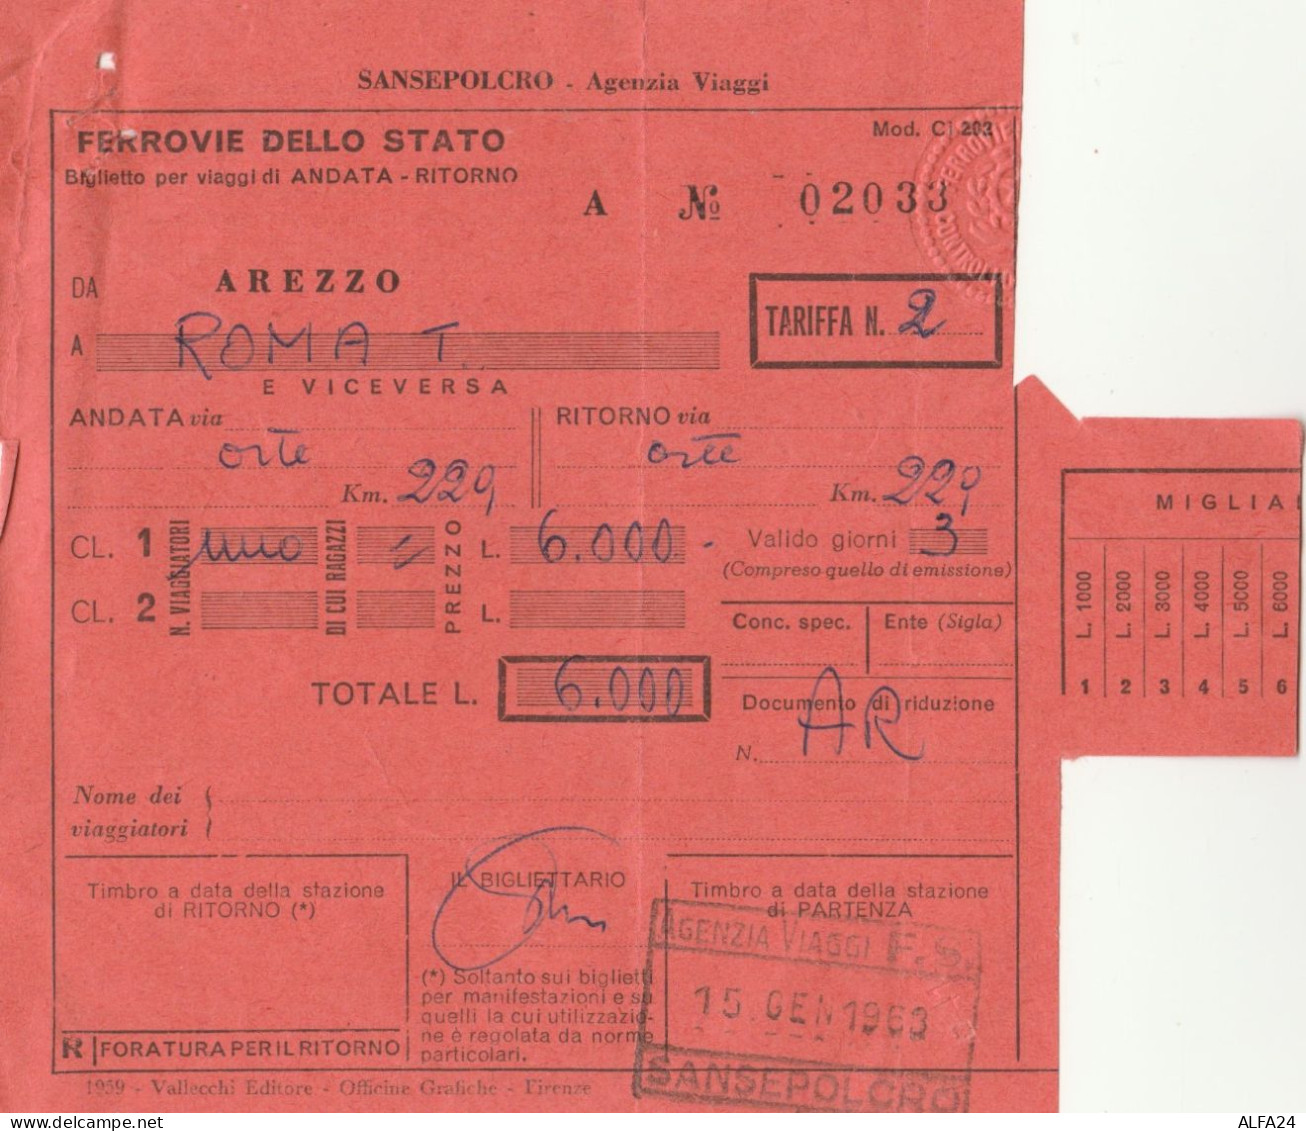 BIGLIETTO TRENO 1953 AREZZO ROMA  (XF233 - Europe